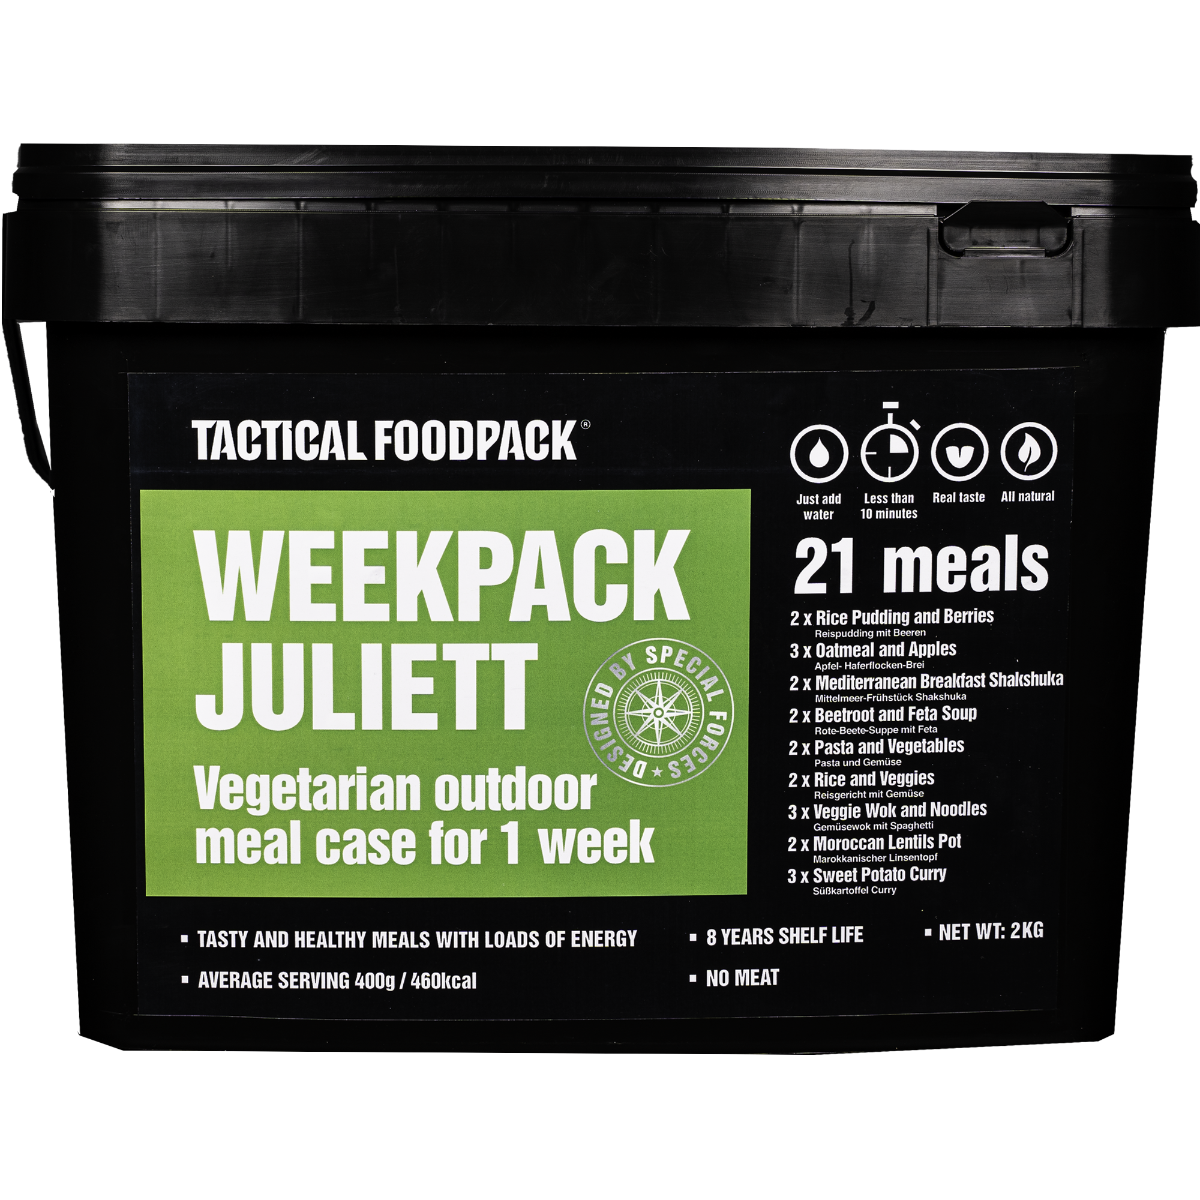 Weekpack Juliett Tactical Foodpack je vrhunska liofilizirana hrana za na pot. Ta paket 21ith vegetarijanskih Tactical Foodpack obrokov zagotavlja visoko hranljivost in uravnoteženo prehrano za aktivne posameznike v ekstremnih razmerah. Tactical Foodpack